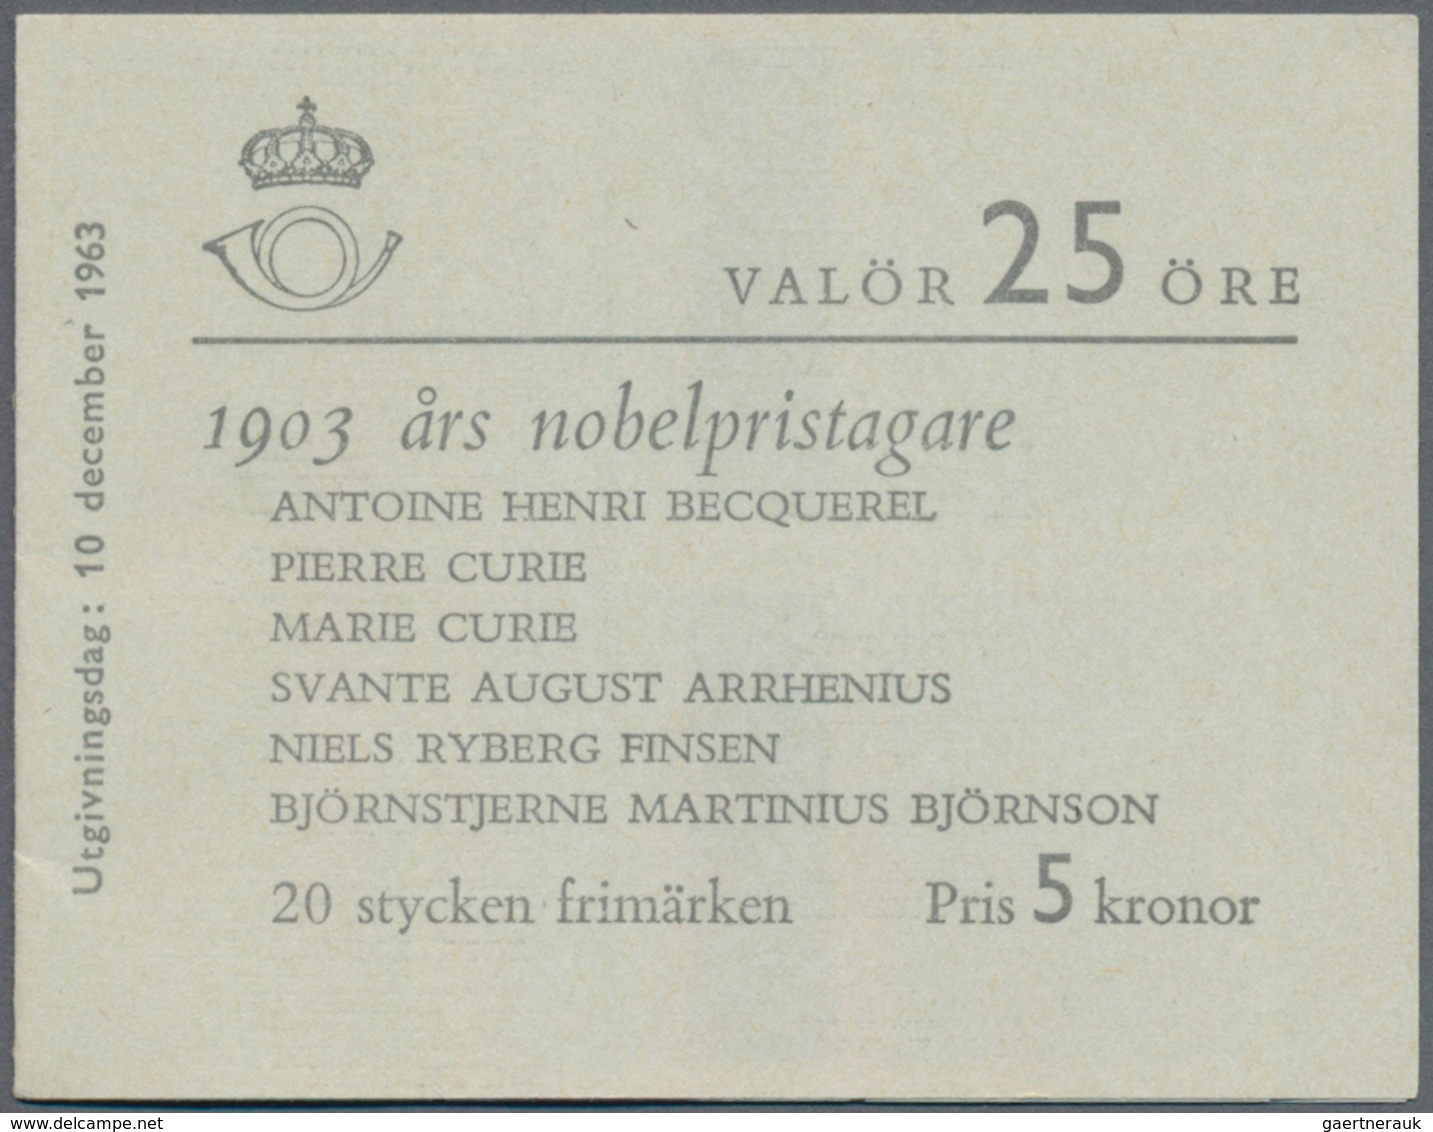 Schweden - Markenheftchen: 1947/1963, duplicated accumulation with 816 stamp booklets in about 17 di